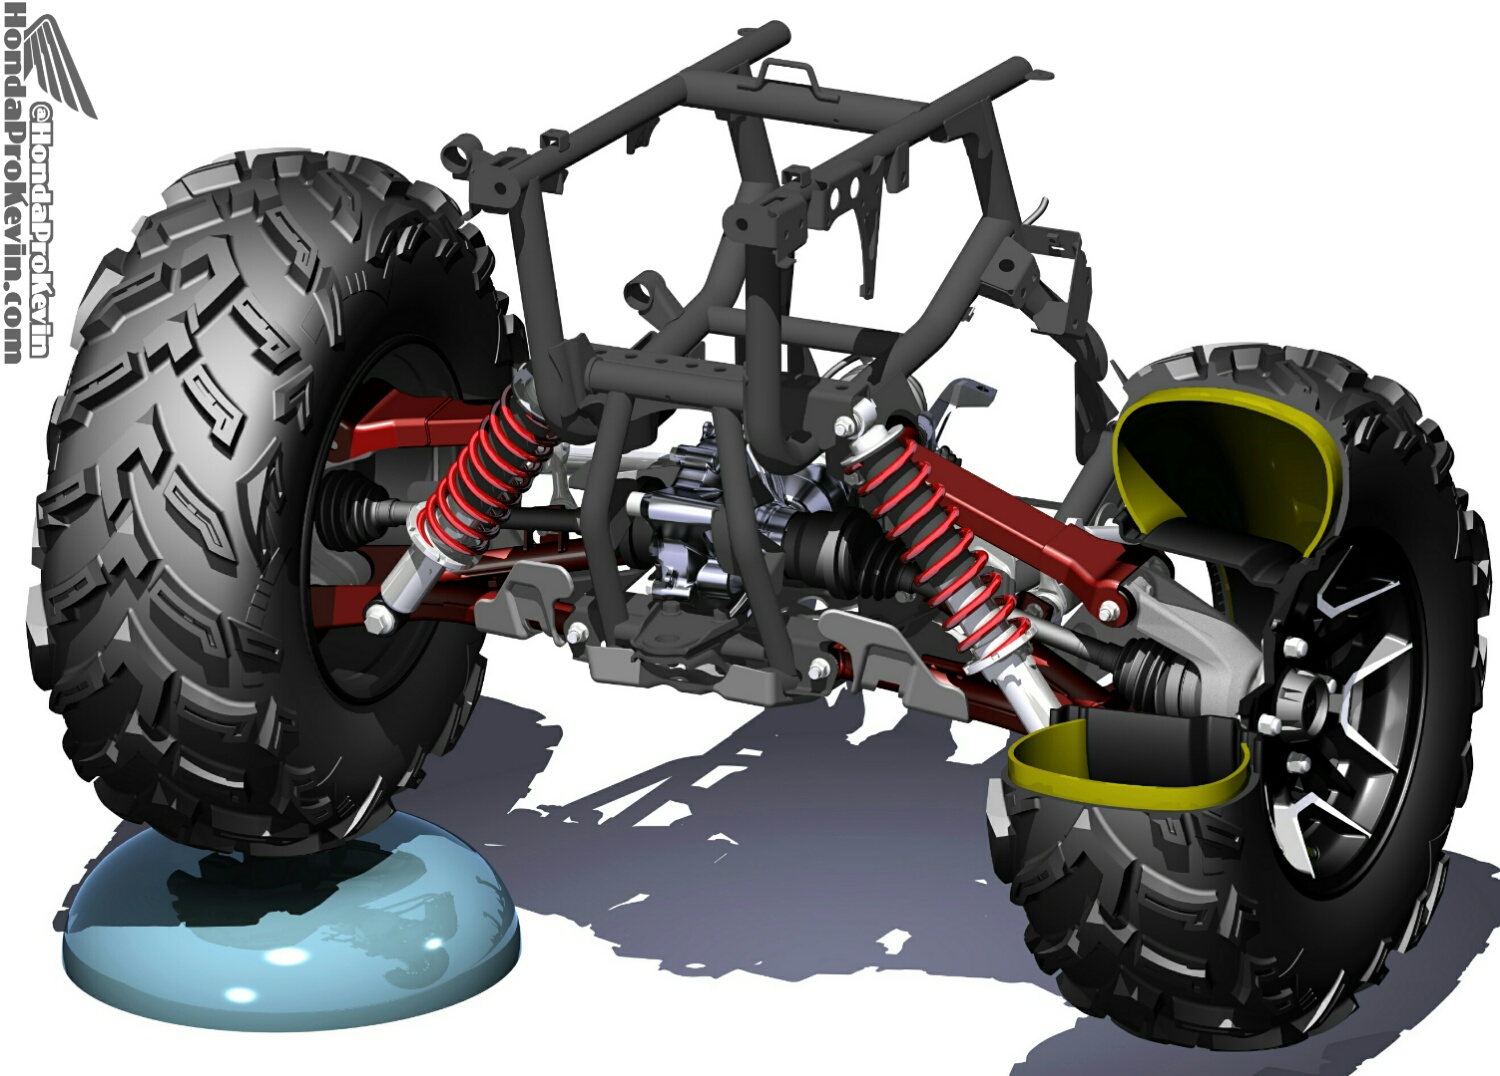 Bronco ATV ComponentsGas Shocks~2007 Honda TRX500FA FourTrax Foreman Rubicon 